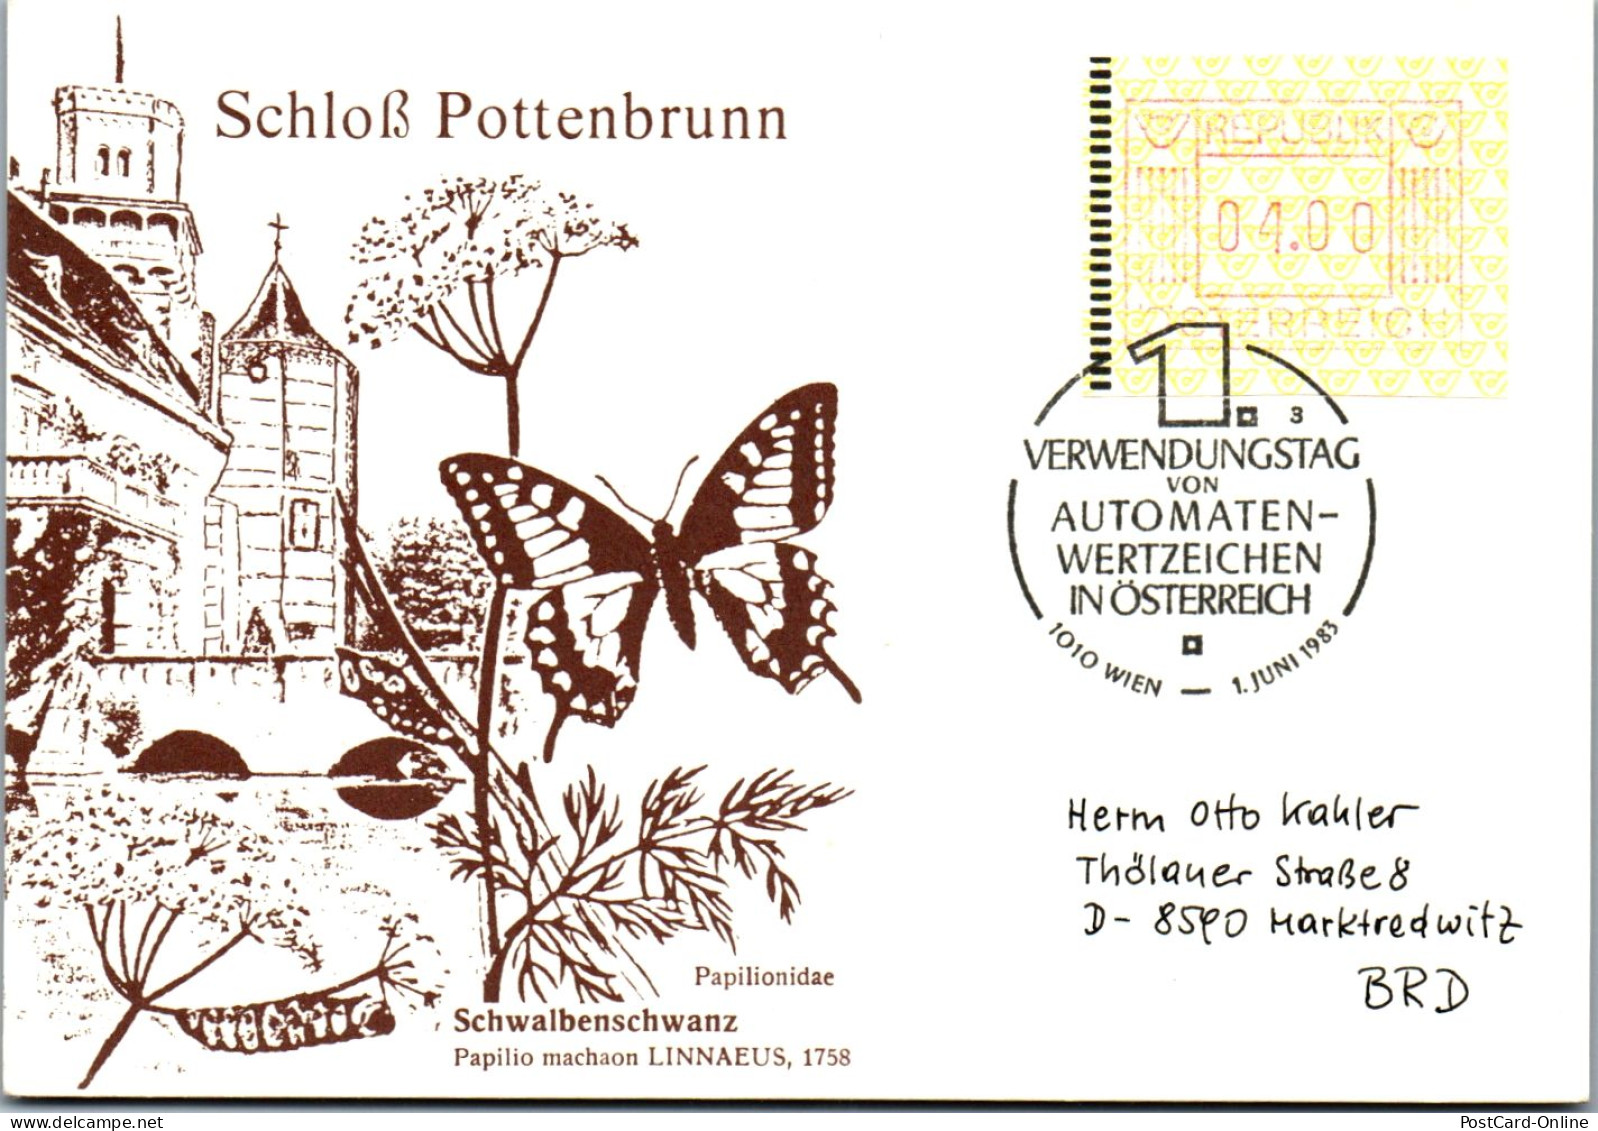 44581 - Österreich - Automatenmarke , Schloß Pottenbrunn , Automatenwertzeichen - Nicht Gelaufen 1983 - Automatenmarken [ATM]